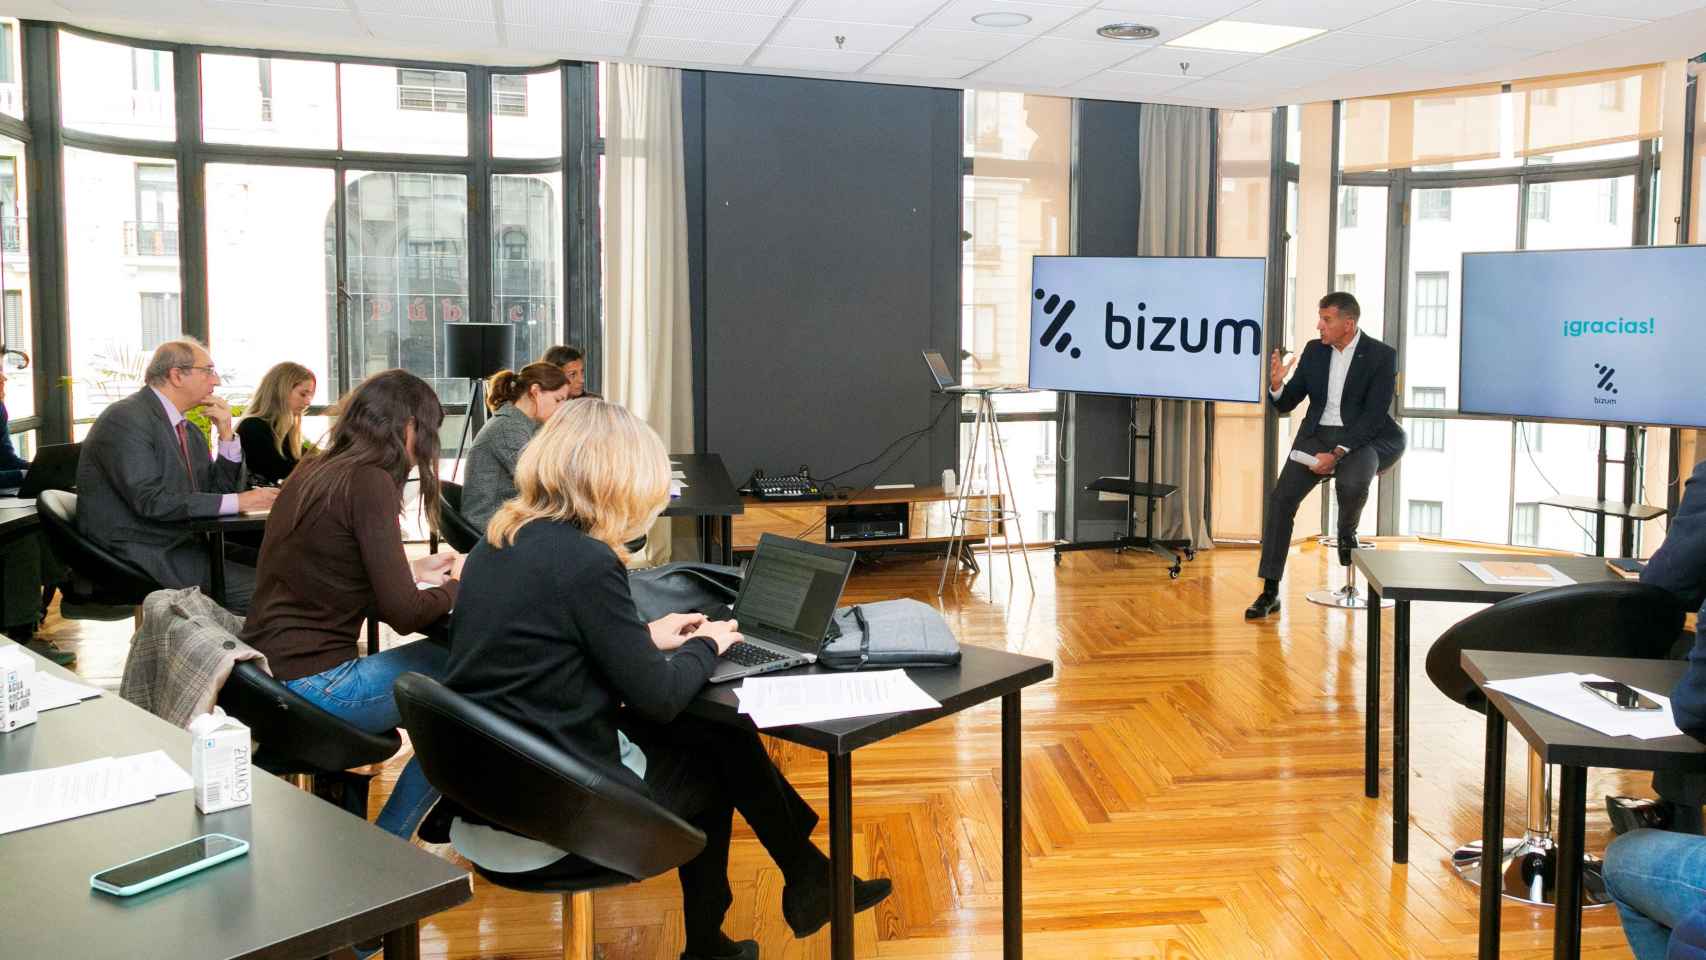 Bizum permite hacer transferencias más rápidas y fáciles con el móvil